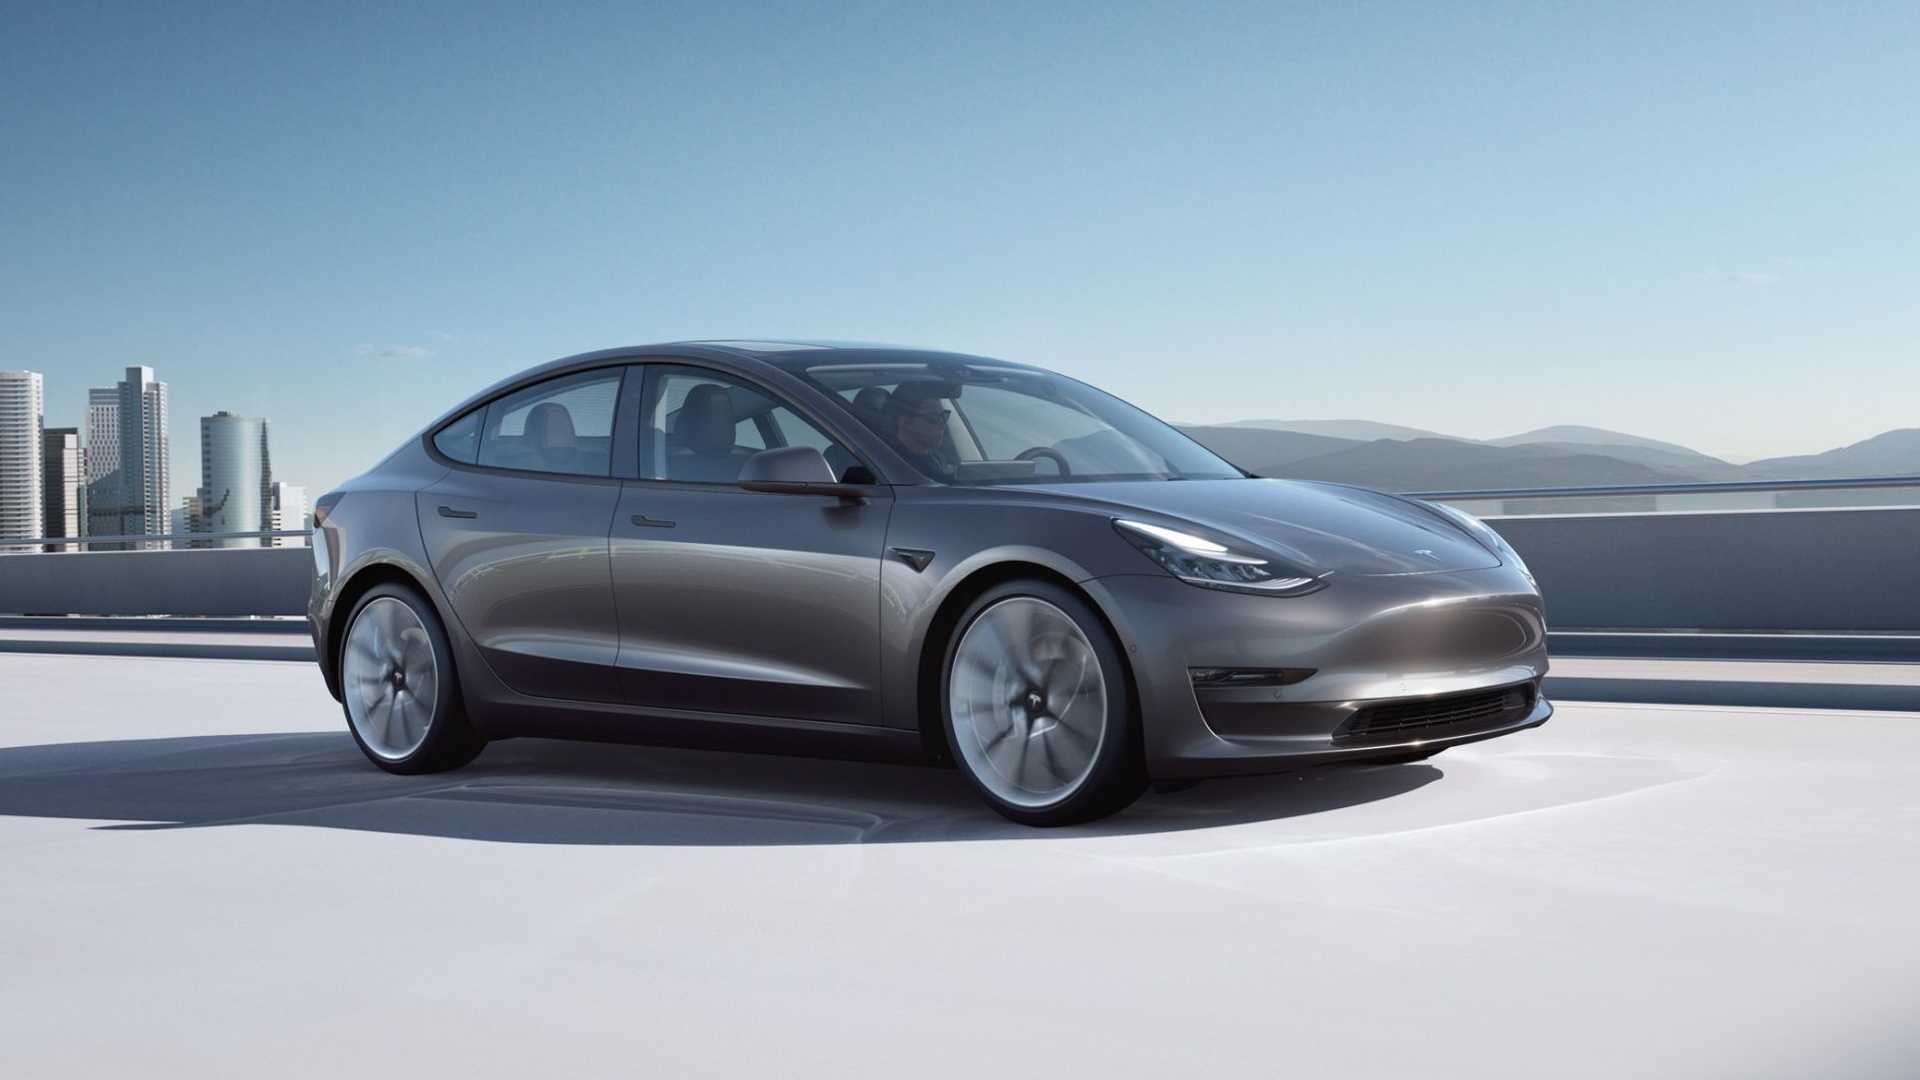 Tesla відкликає понад 1 млн електромобілів